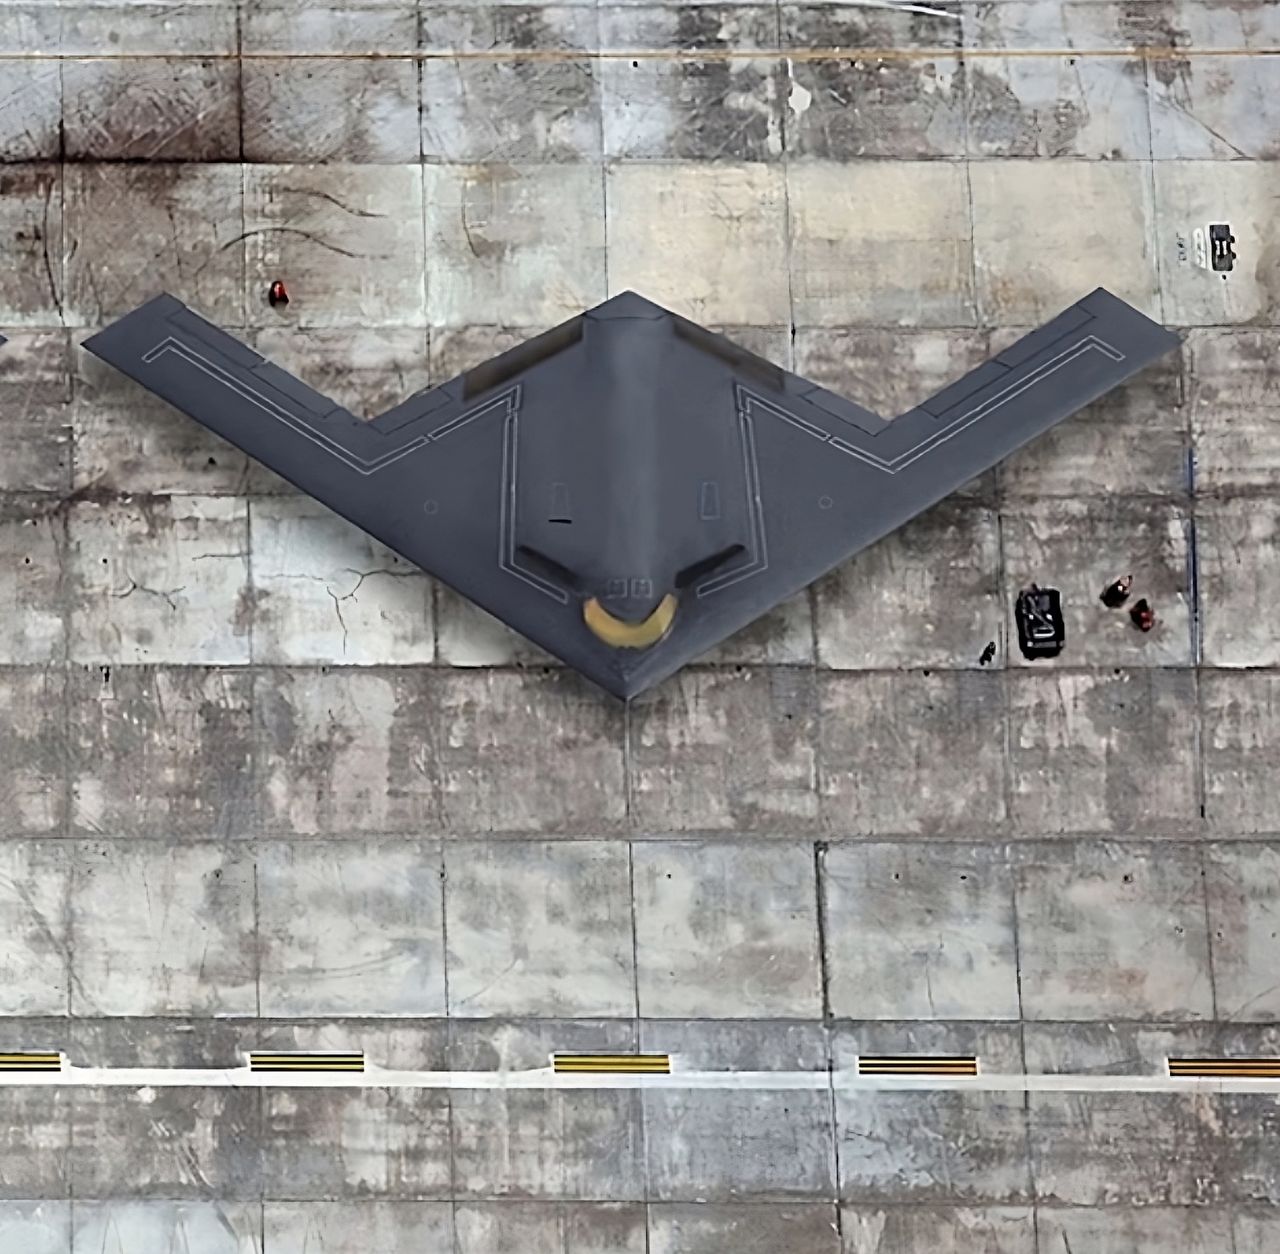 Bombowiec B-21 Raider już w produkcji. Technologię stealth opracowali Rosjanie